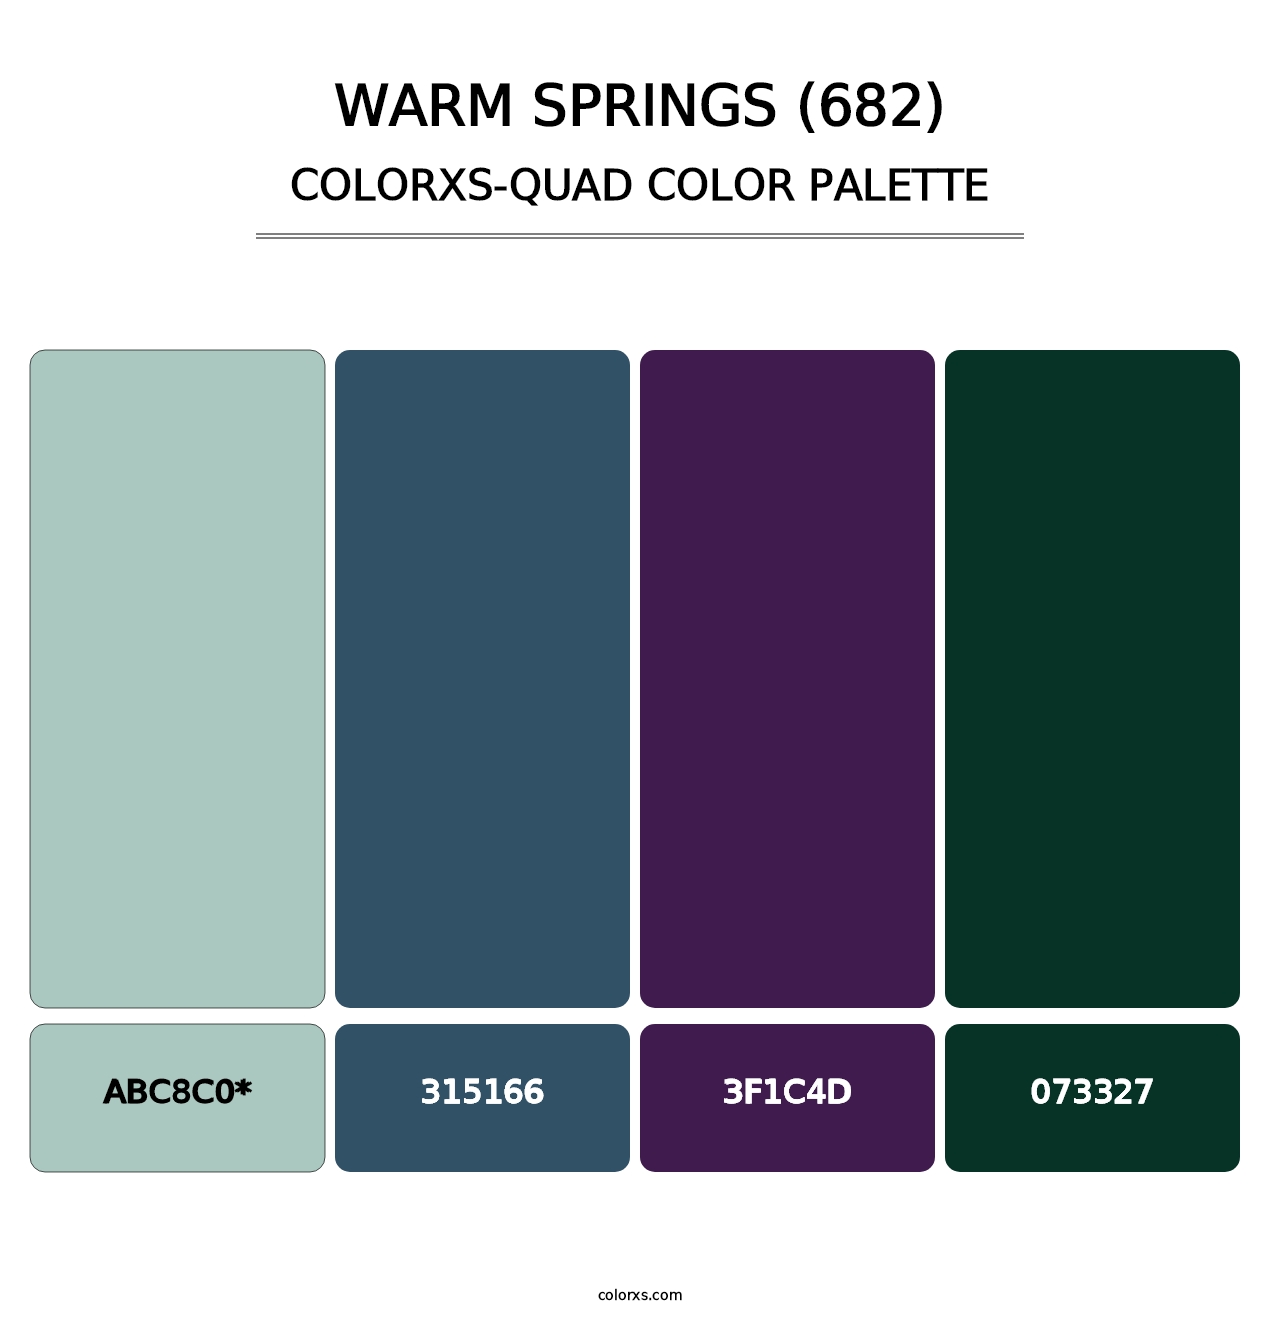 Warm Springs (682) - Colorxs Quad Palette